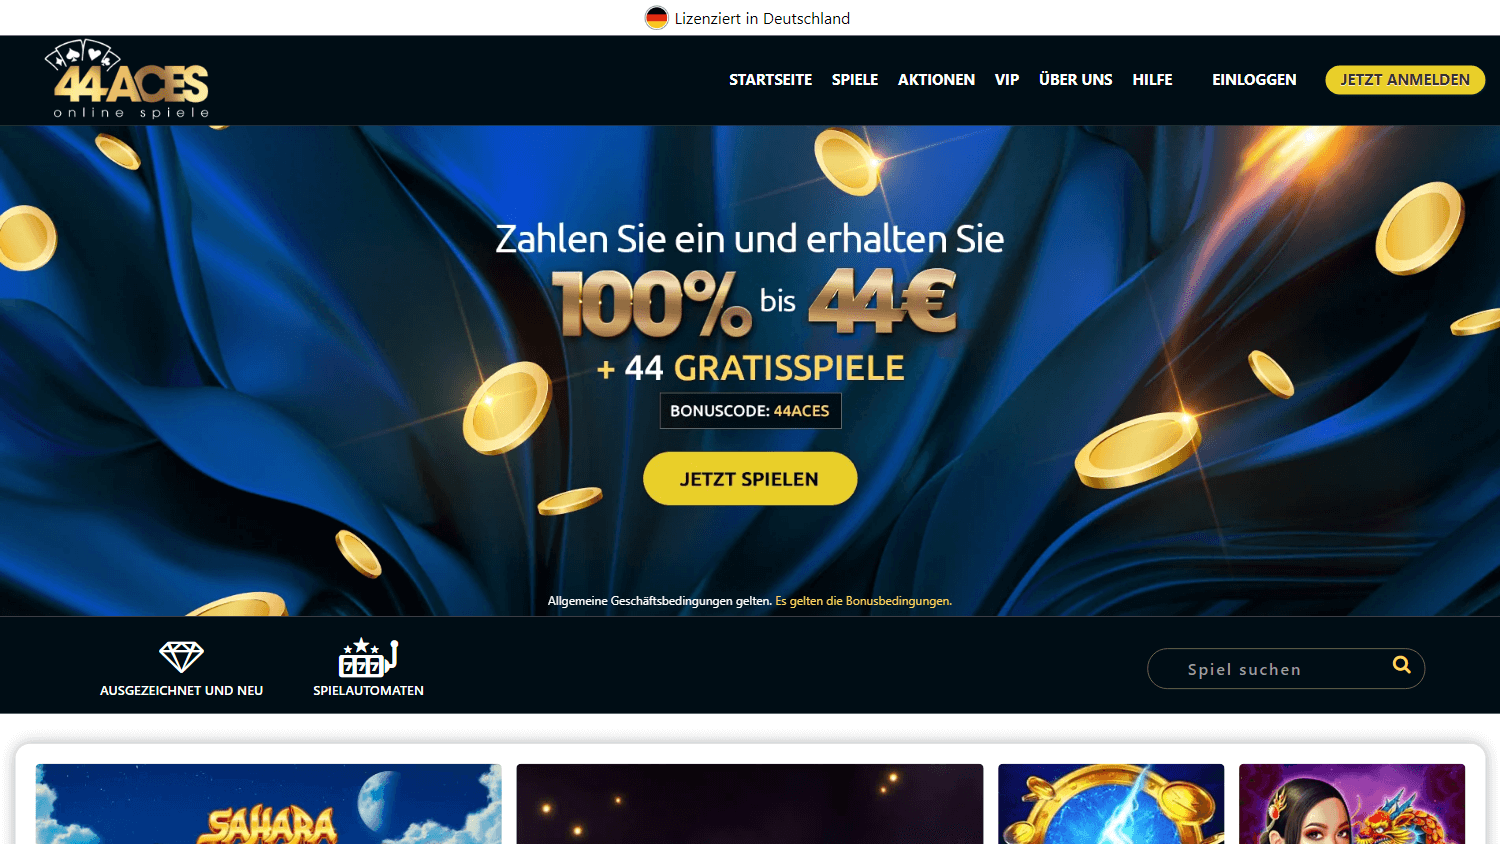 44aces_casino_de_homepage_desktop